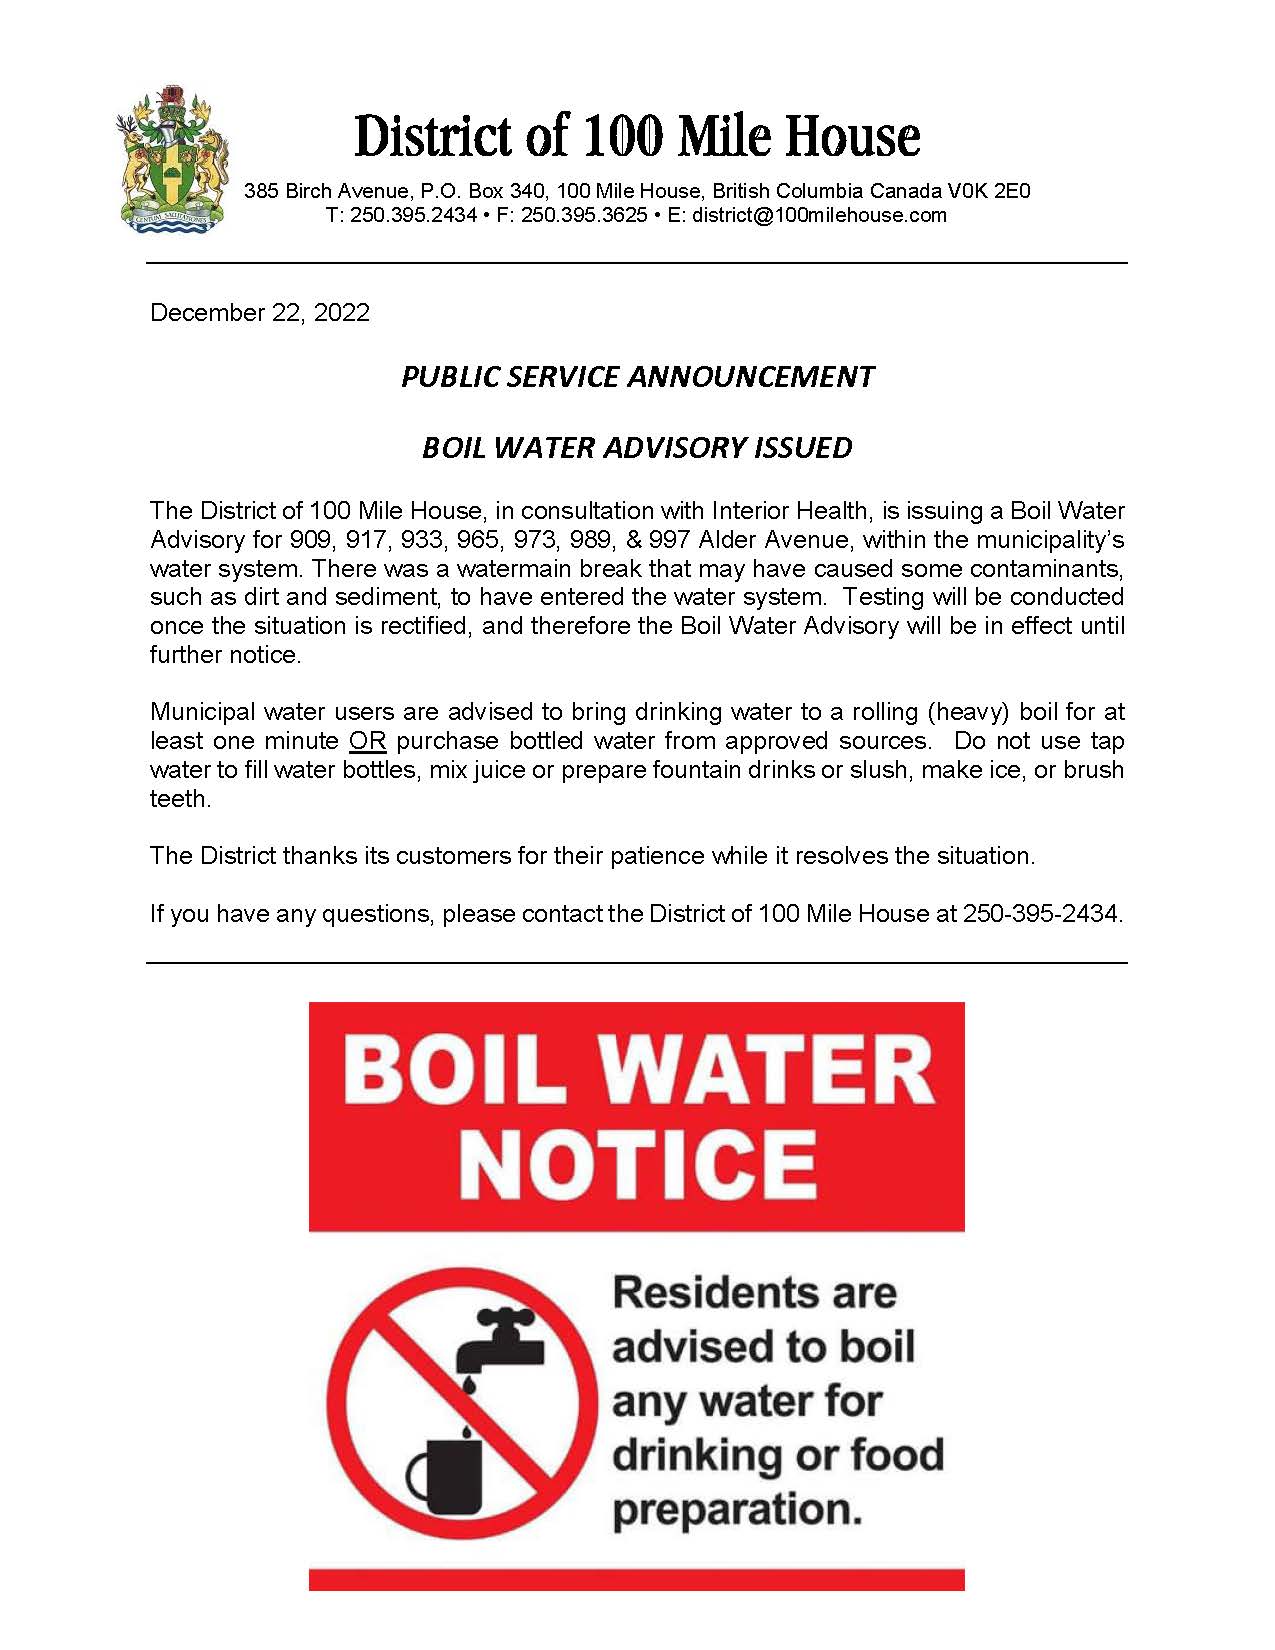 Boil Water Notice Dec 22 2022.jpg